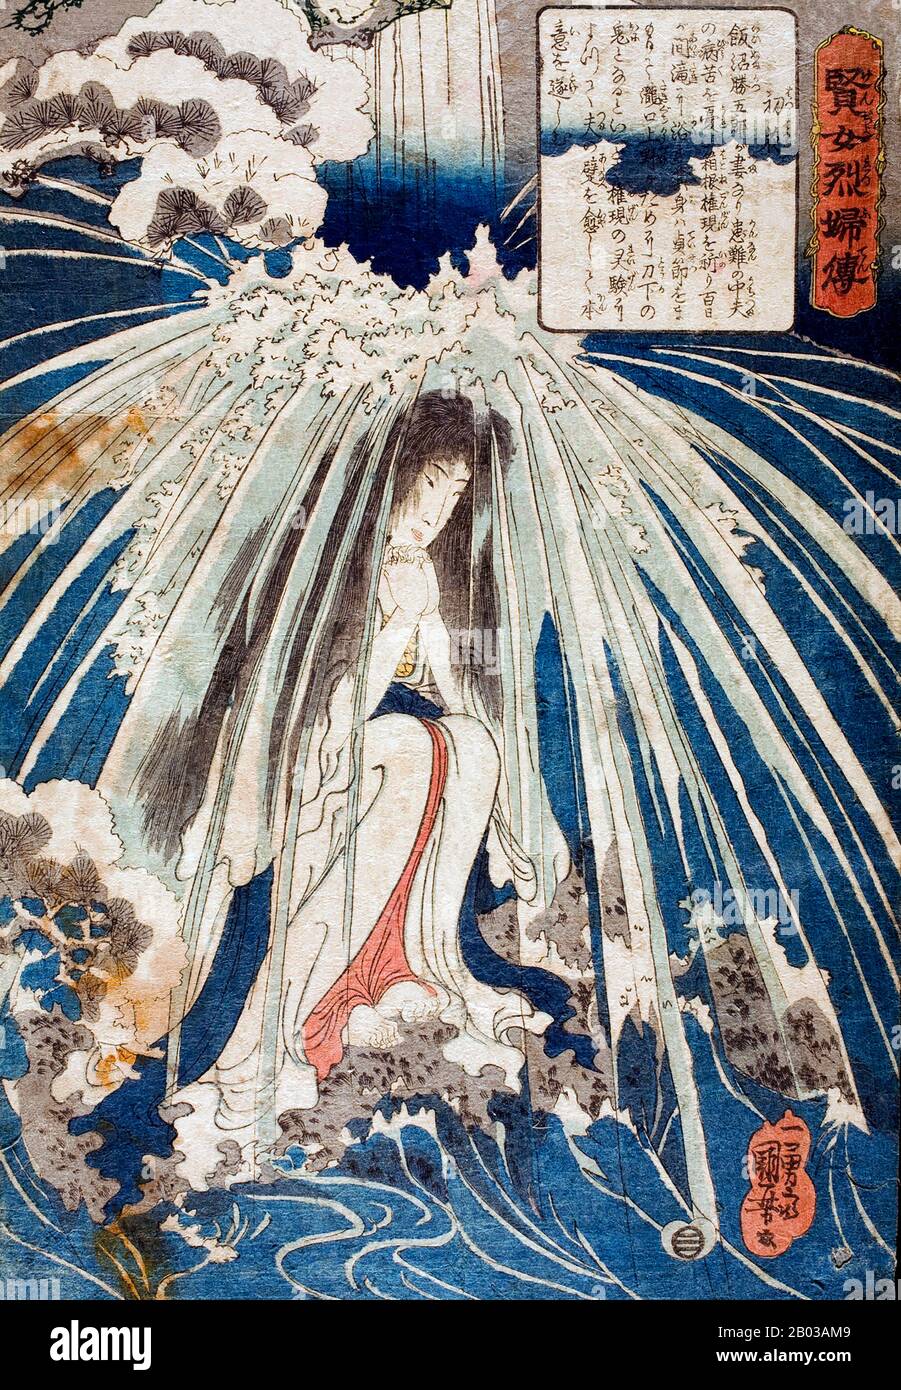 Utagawa Kuniyoshi (* 1. Januar, † 14. April 1861) war einer der letzten großen Meister des japanischen Ukiyo-e-Stils der Holzschnitte und der Malerei. Er ist mit der Utagawa-Schule verbunden. Stockfoto